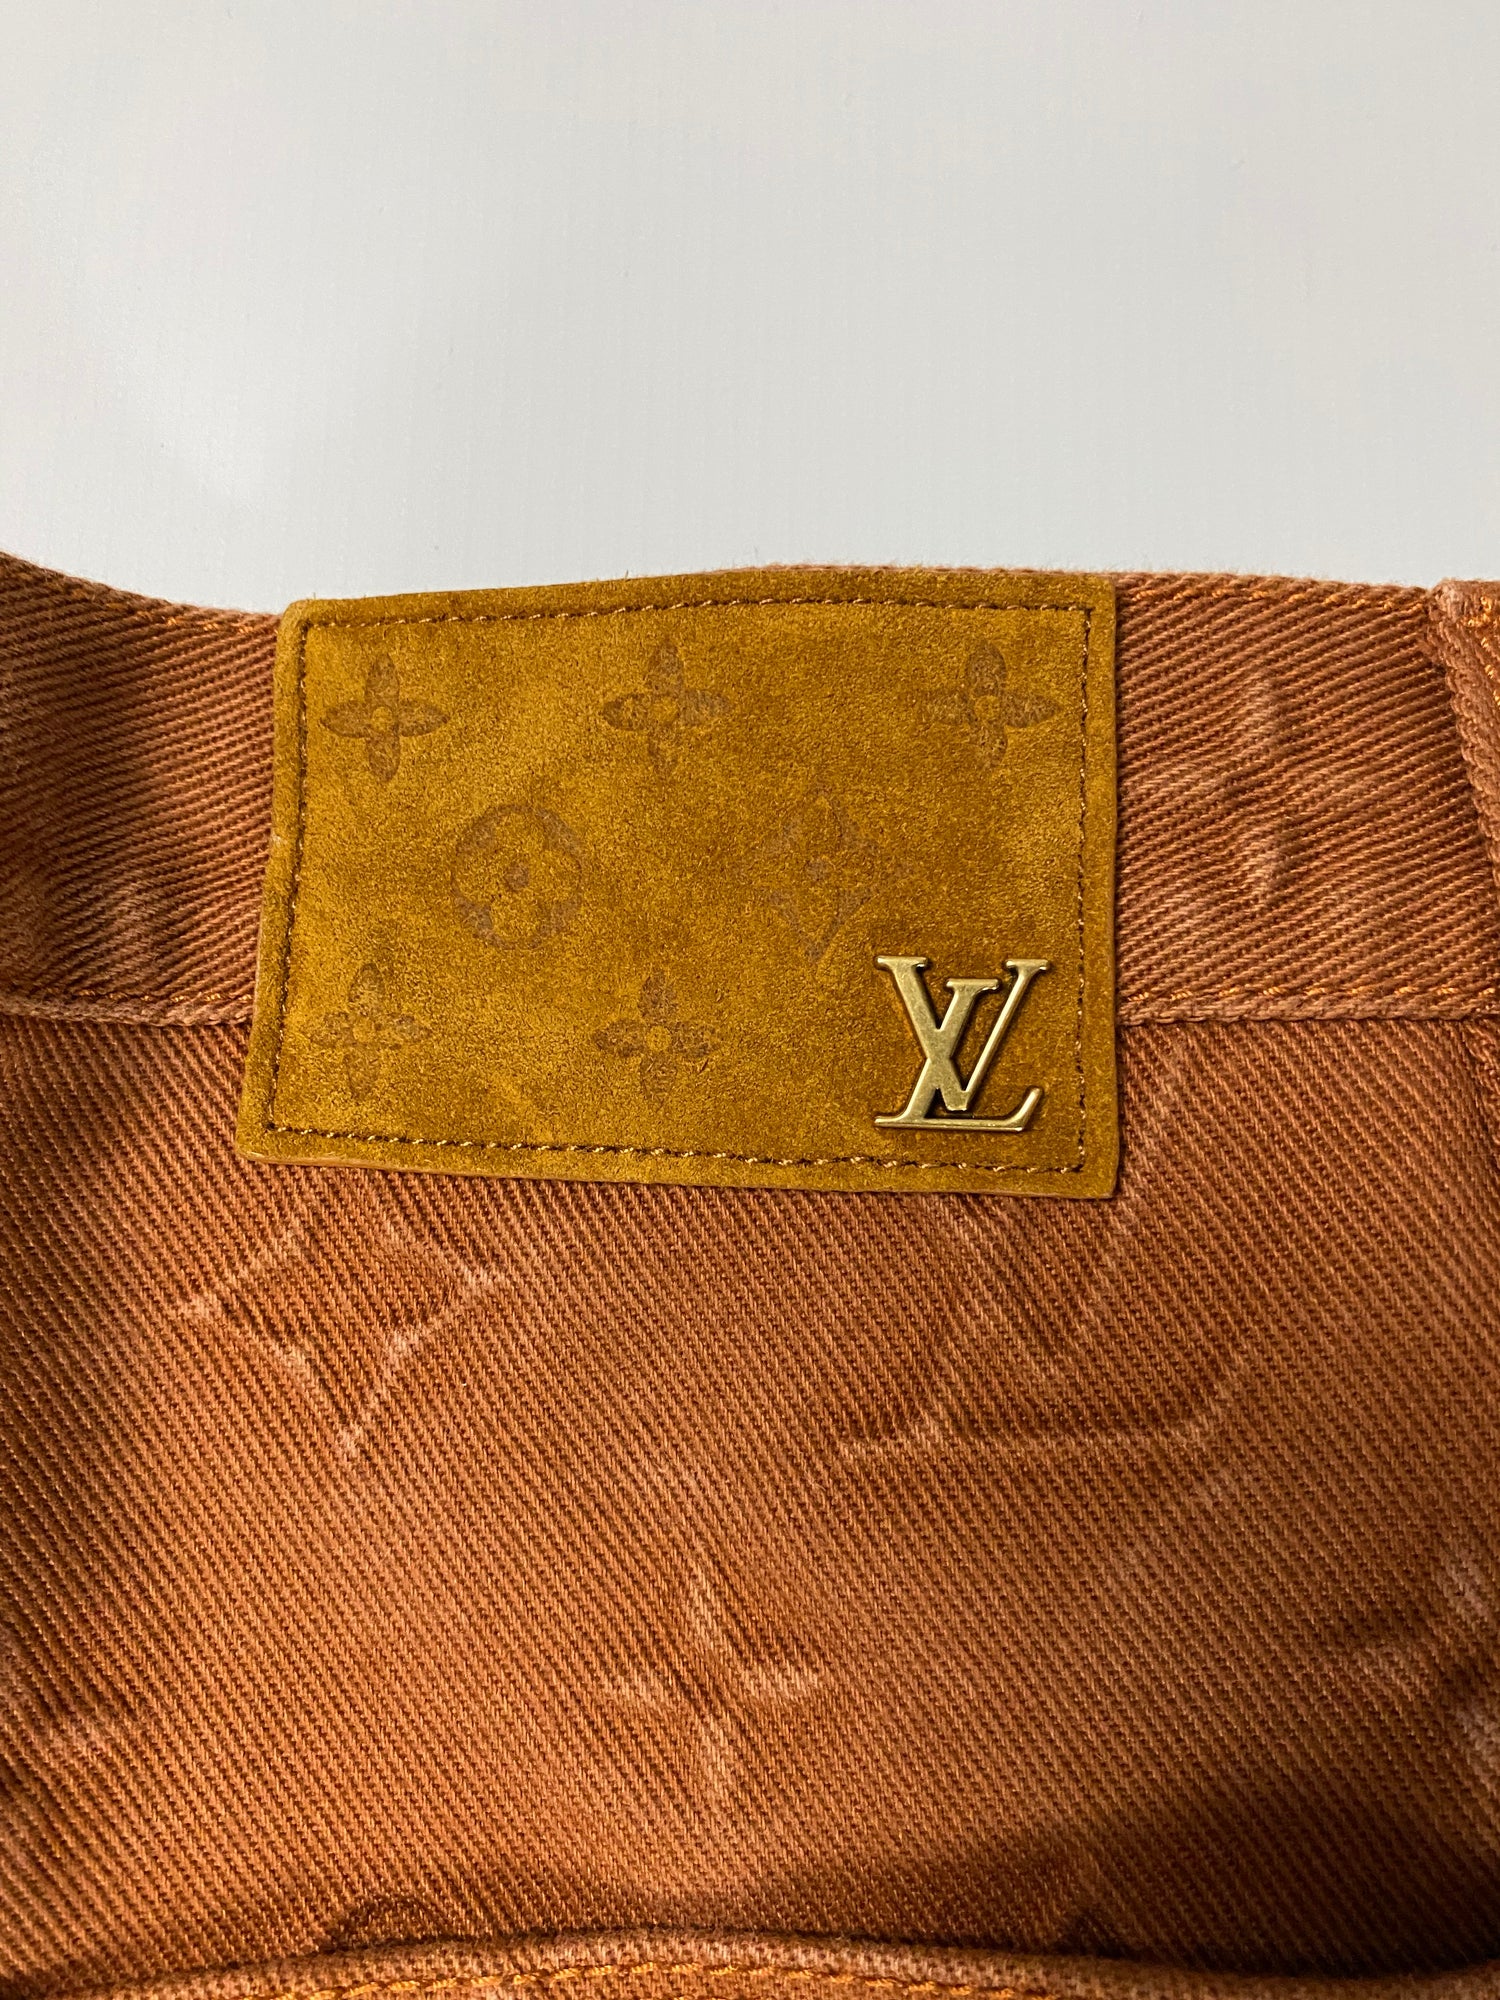 Louis Vuitton LV x VIRGIL 1/30 Tie Dye Double Knee Le Flare Jeans